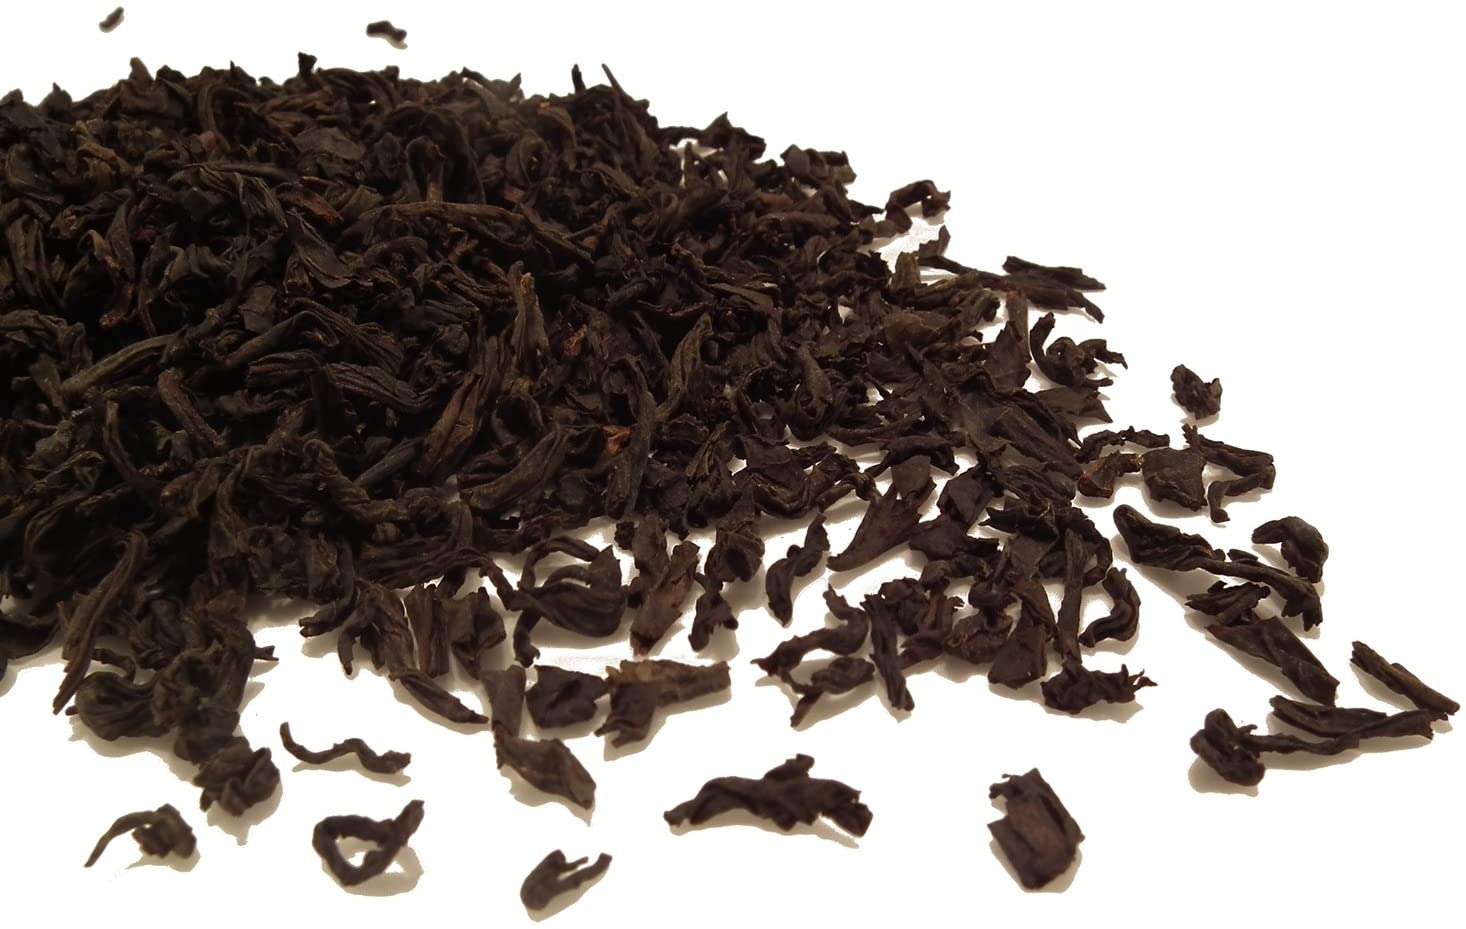 Lapsang Souchong Tea Black Smoked Loose Leaf Tea